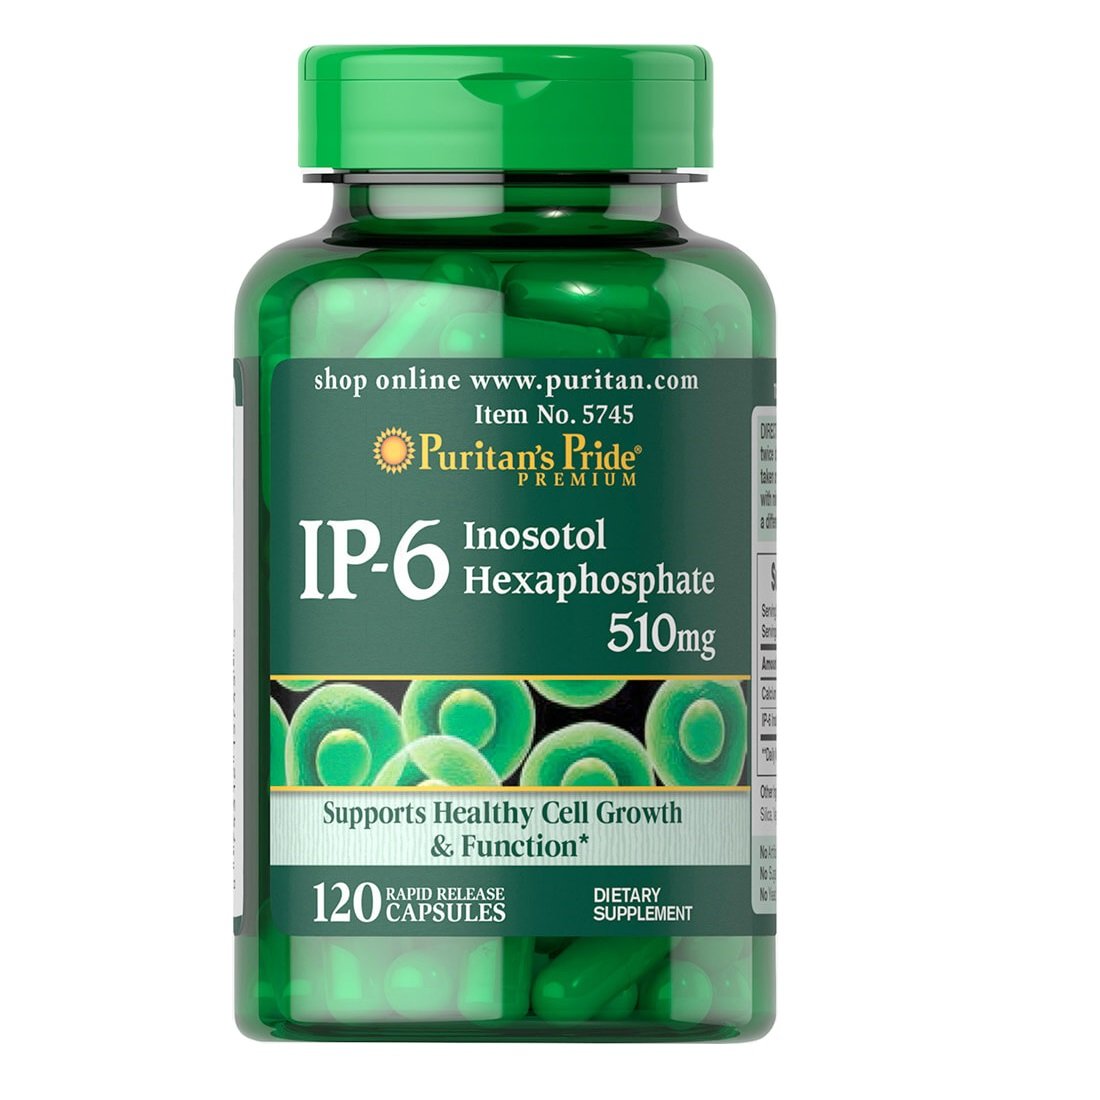 Витамины и минералы Puritan's Pride IP-6 Inositol Hexaphosphate 510 mg, 120 капсул,  мл, Puritan's Pride. Витамины и минералы. Поддержание здоровья Укрепление иммунитета 